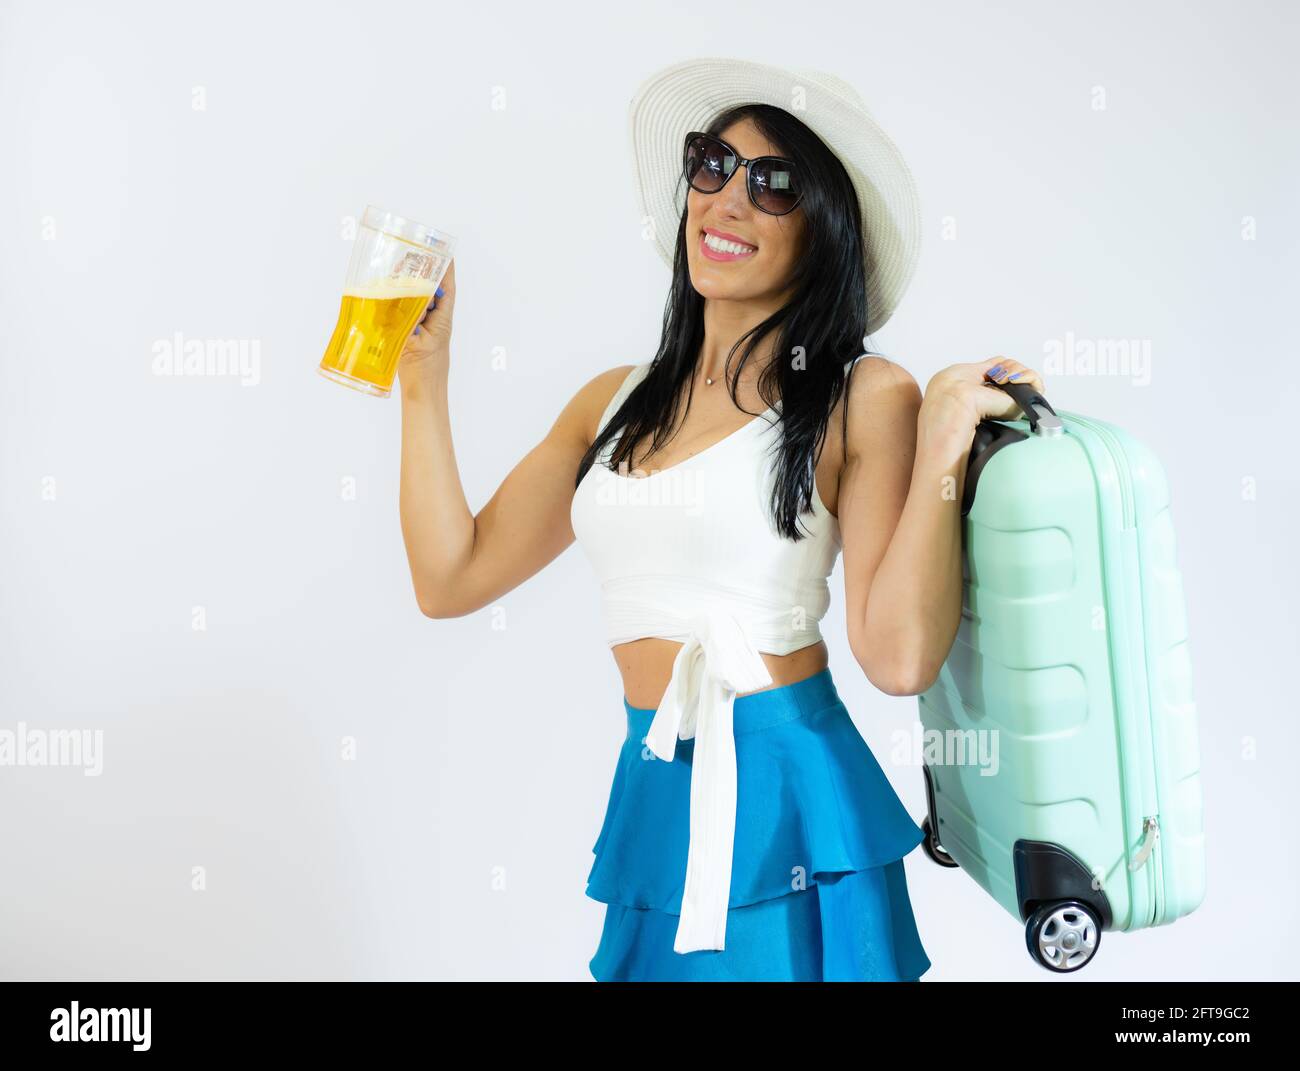 Porträt einer schönen Frau in einem Strohhut, die Koffer hält und Bier  trinkt. Sommerzeit Stockfotografie - Alamy